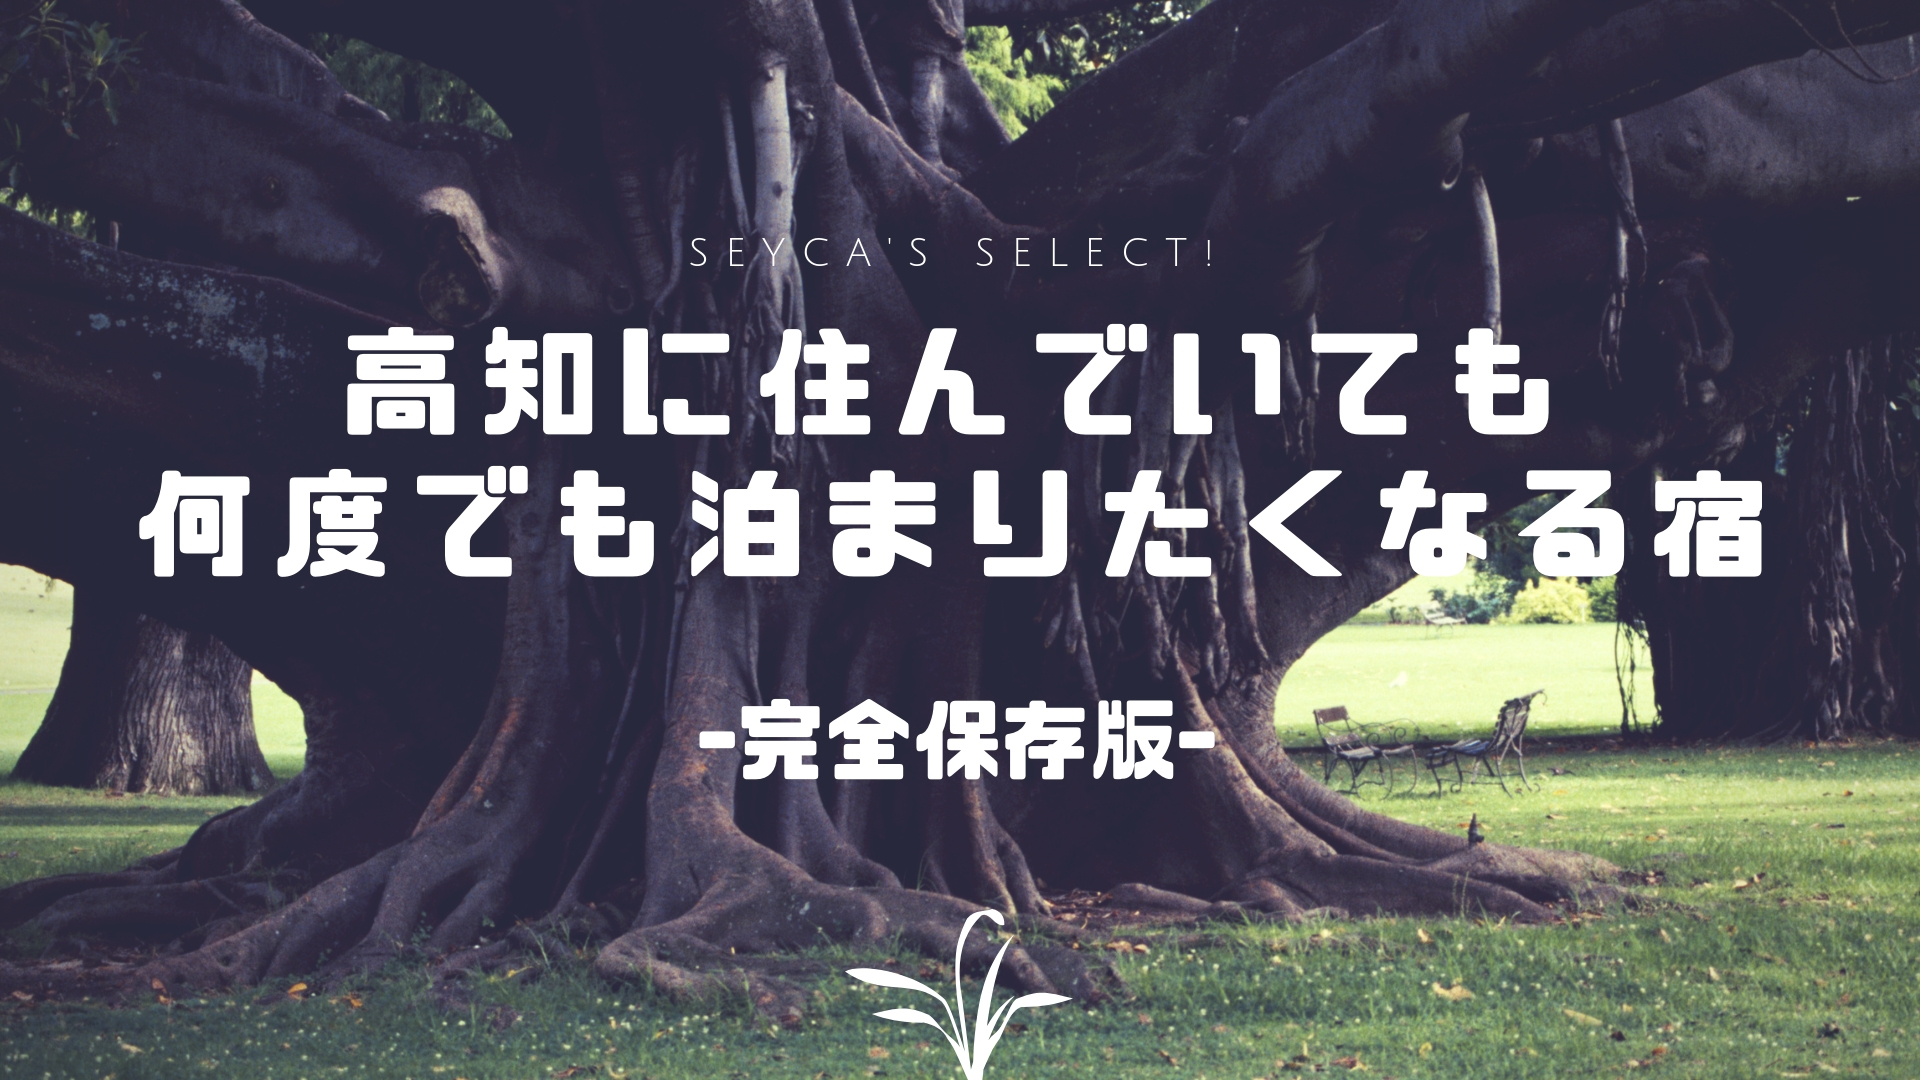 高知県民イチオシ 高知で宿泊するなら絶対泊まってほしいおすすめの宿を厳選 保存版 セイカの暮らし便り